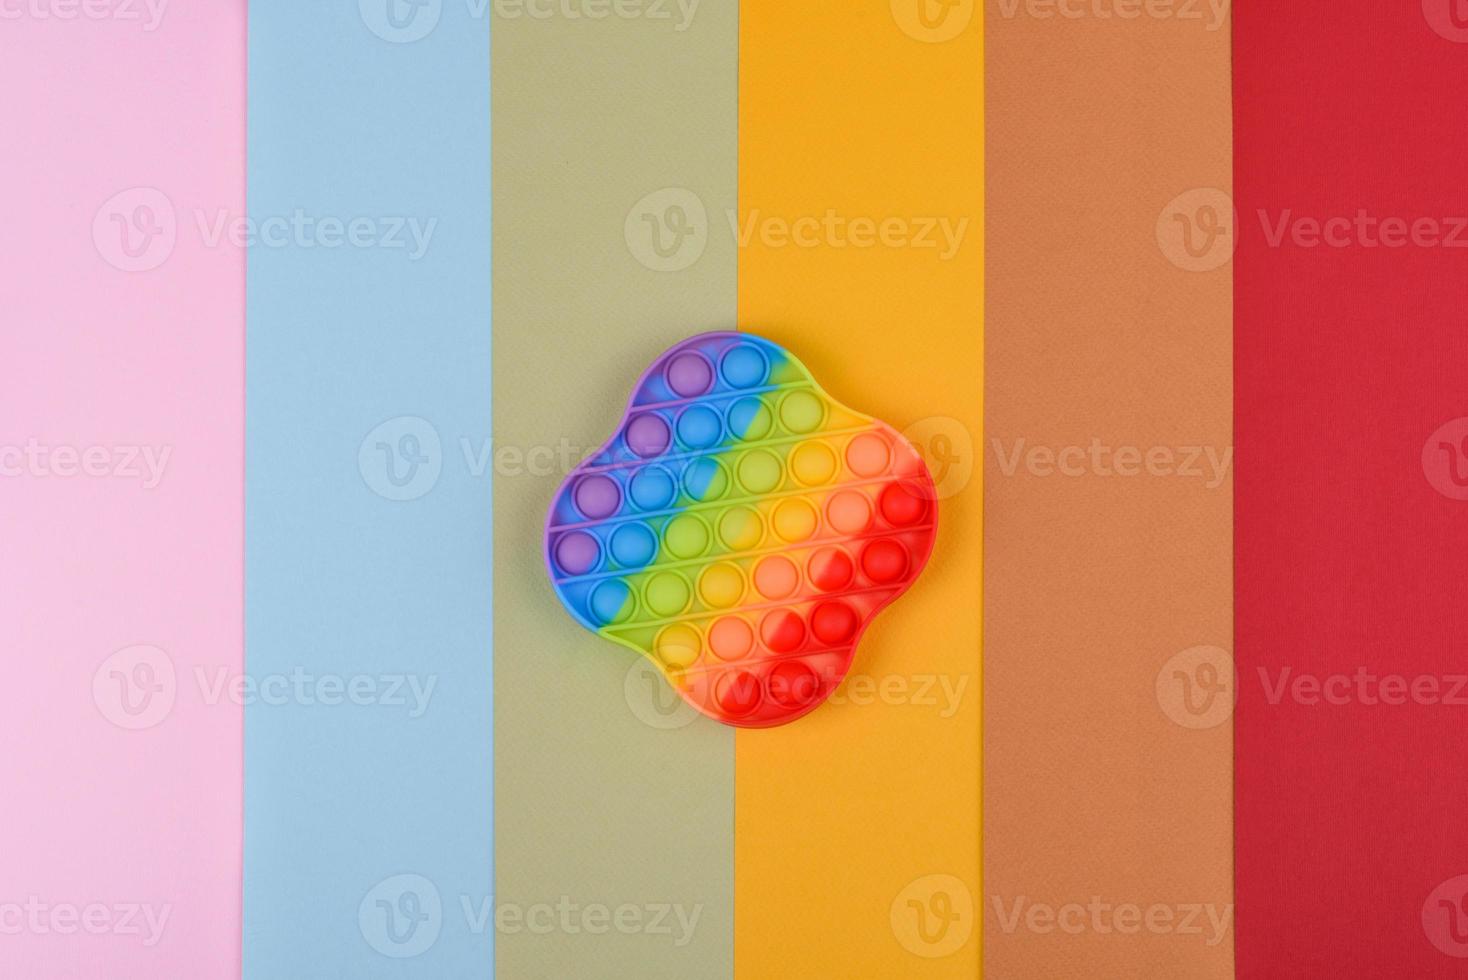 fel kleurrijk kinderspeelgoed gemaakt van siliconen ontworpen om stress te verlichten foto